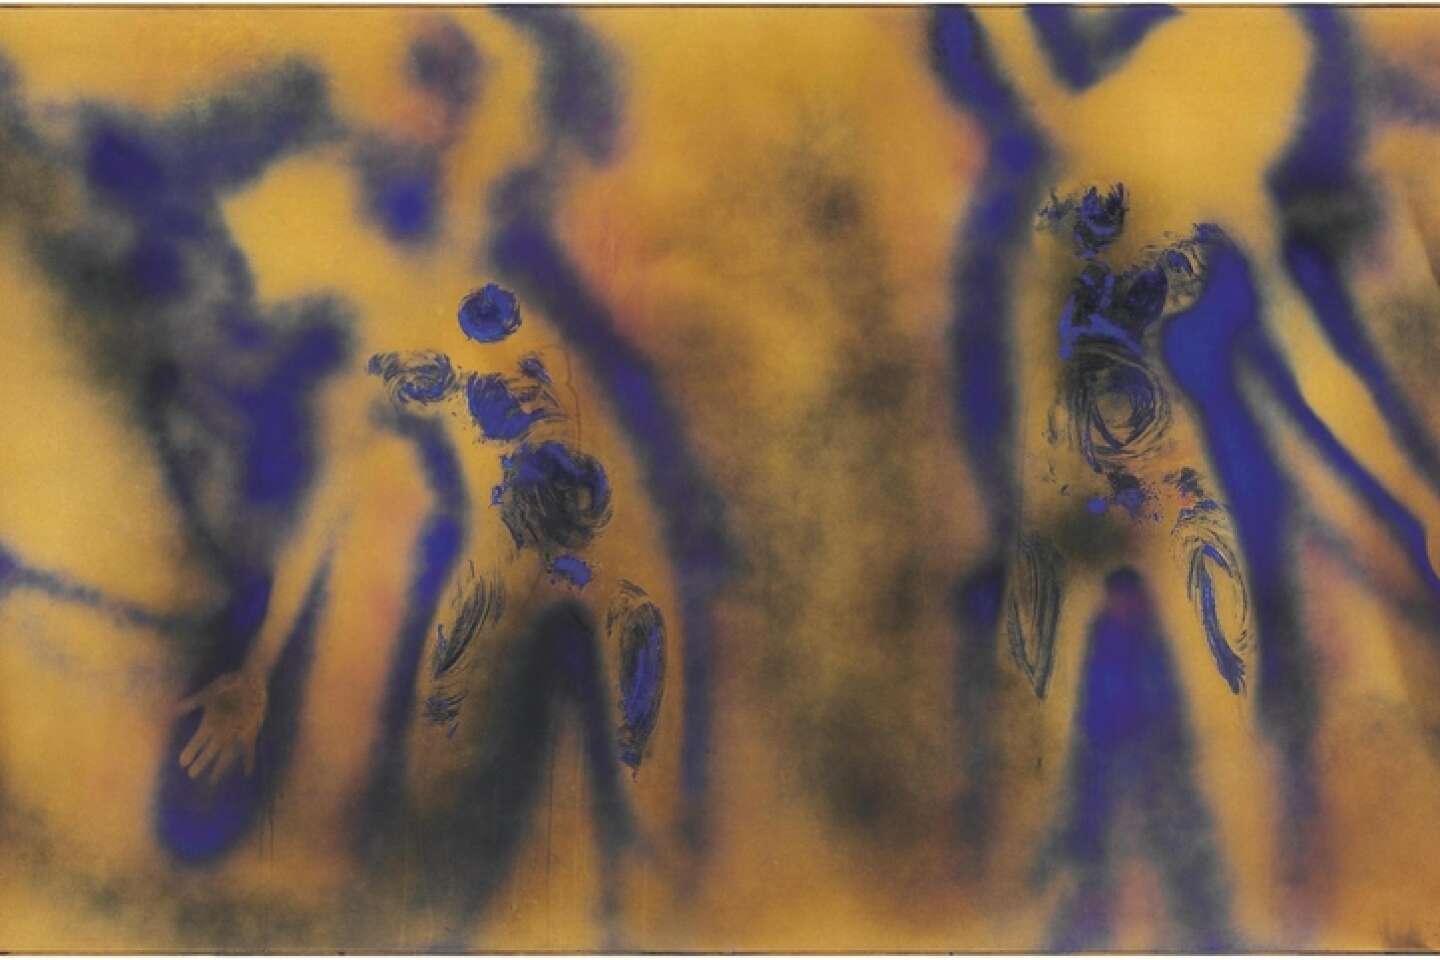 Une œuvre d'Yves Klein : le Mur de feu